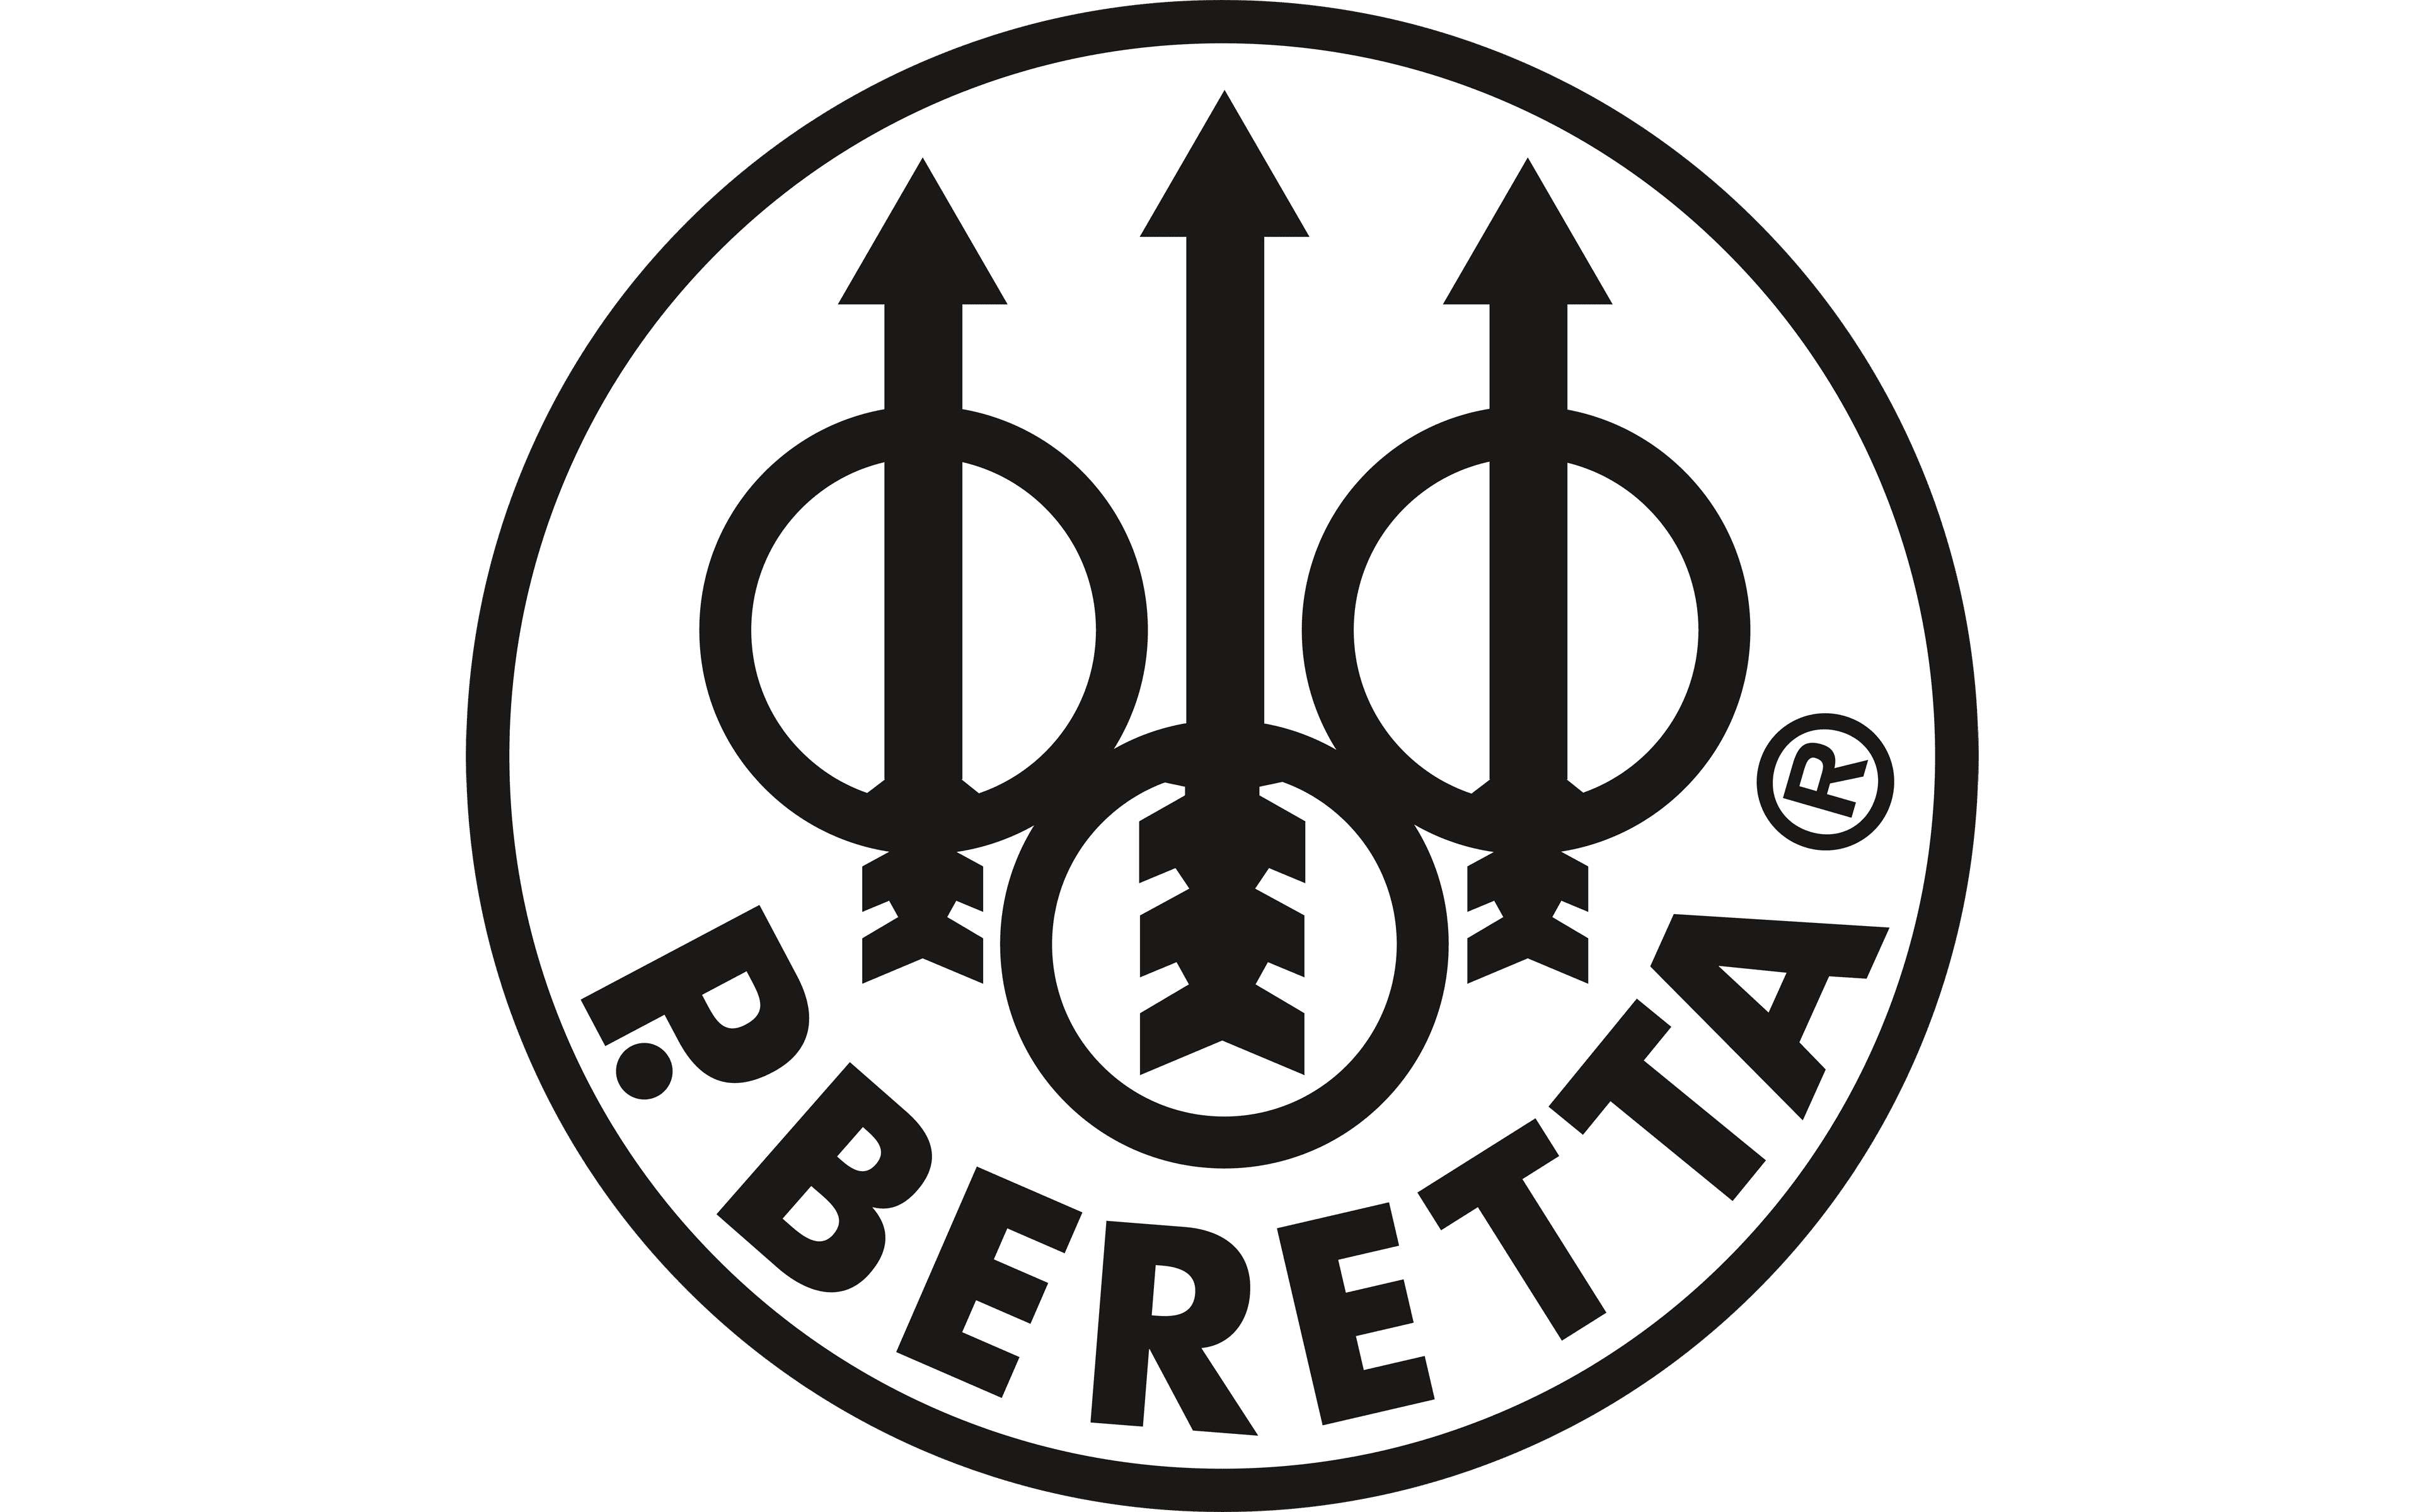 Kolbekapper - Beretta